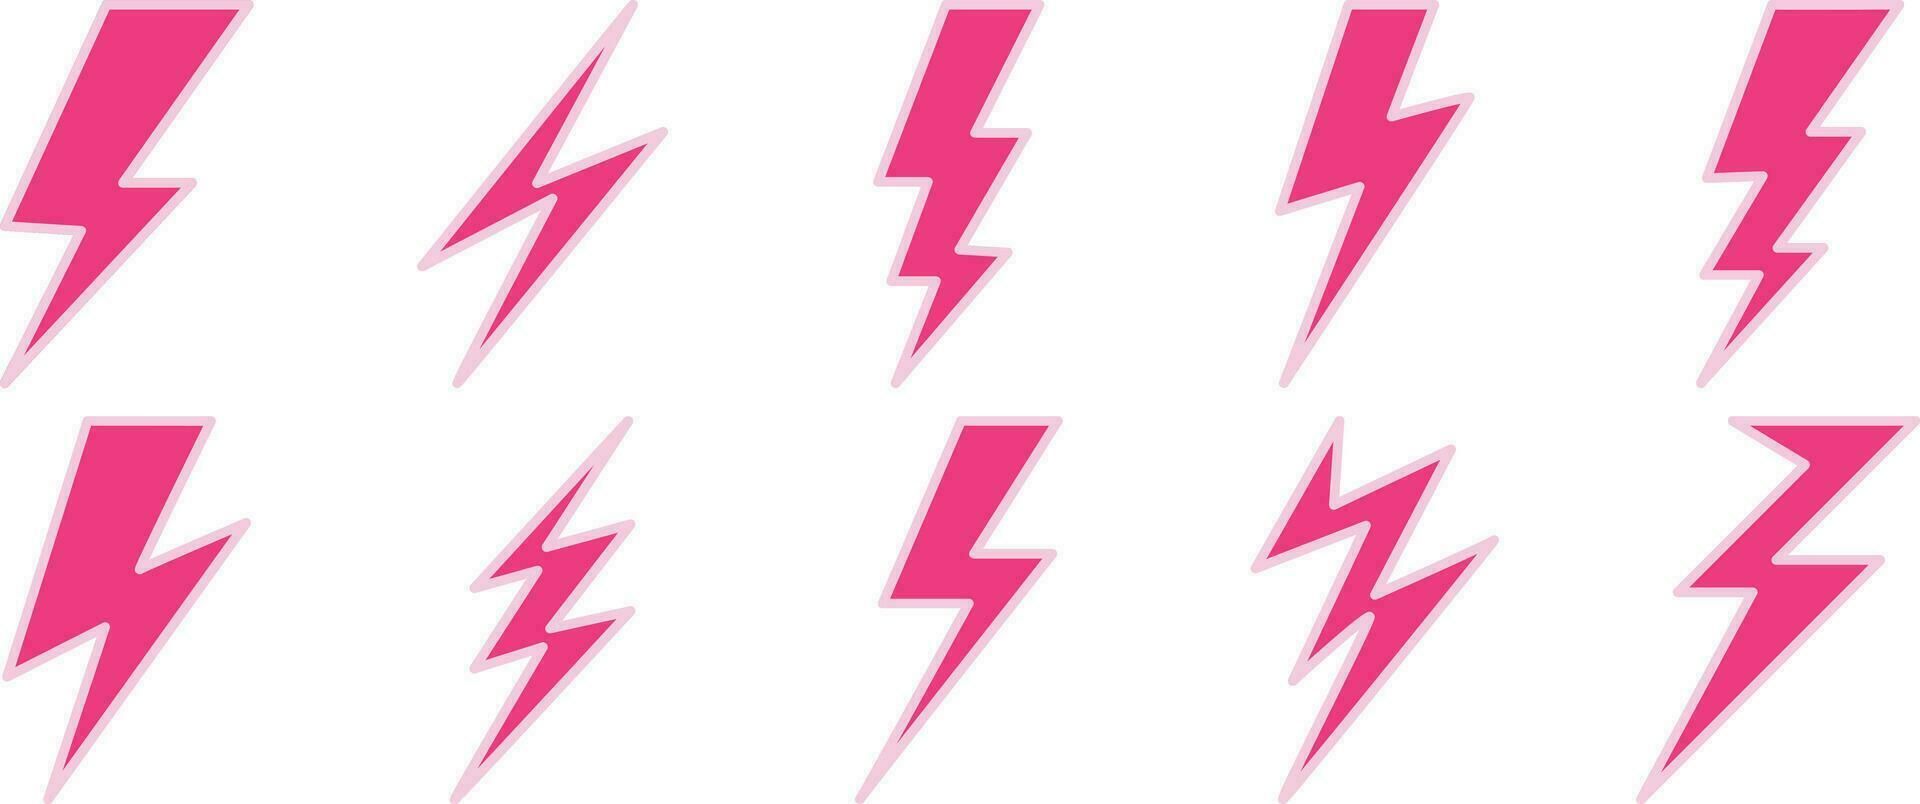 uppsättning av blixt- bult, elektricitet, och storm ikoner i rosa på en vit bakgrund. vektor illustration.